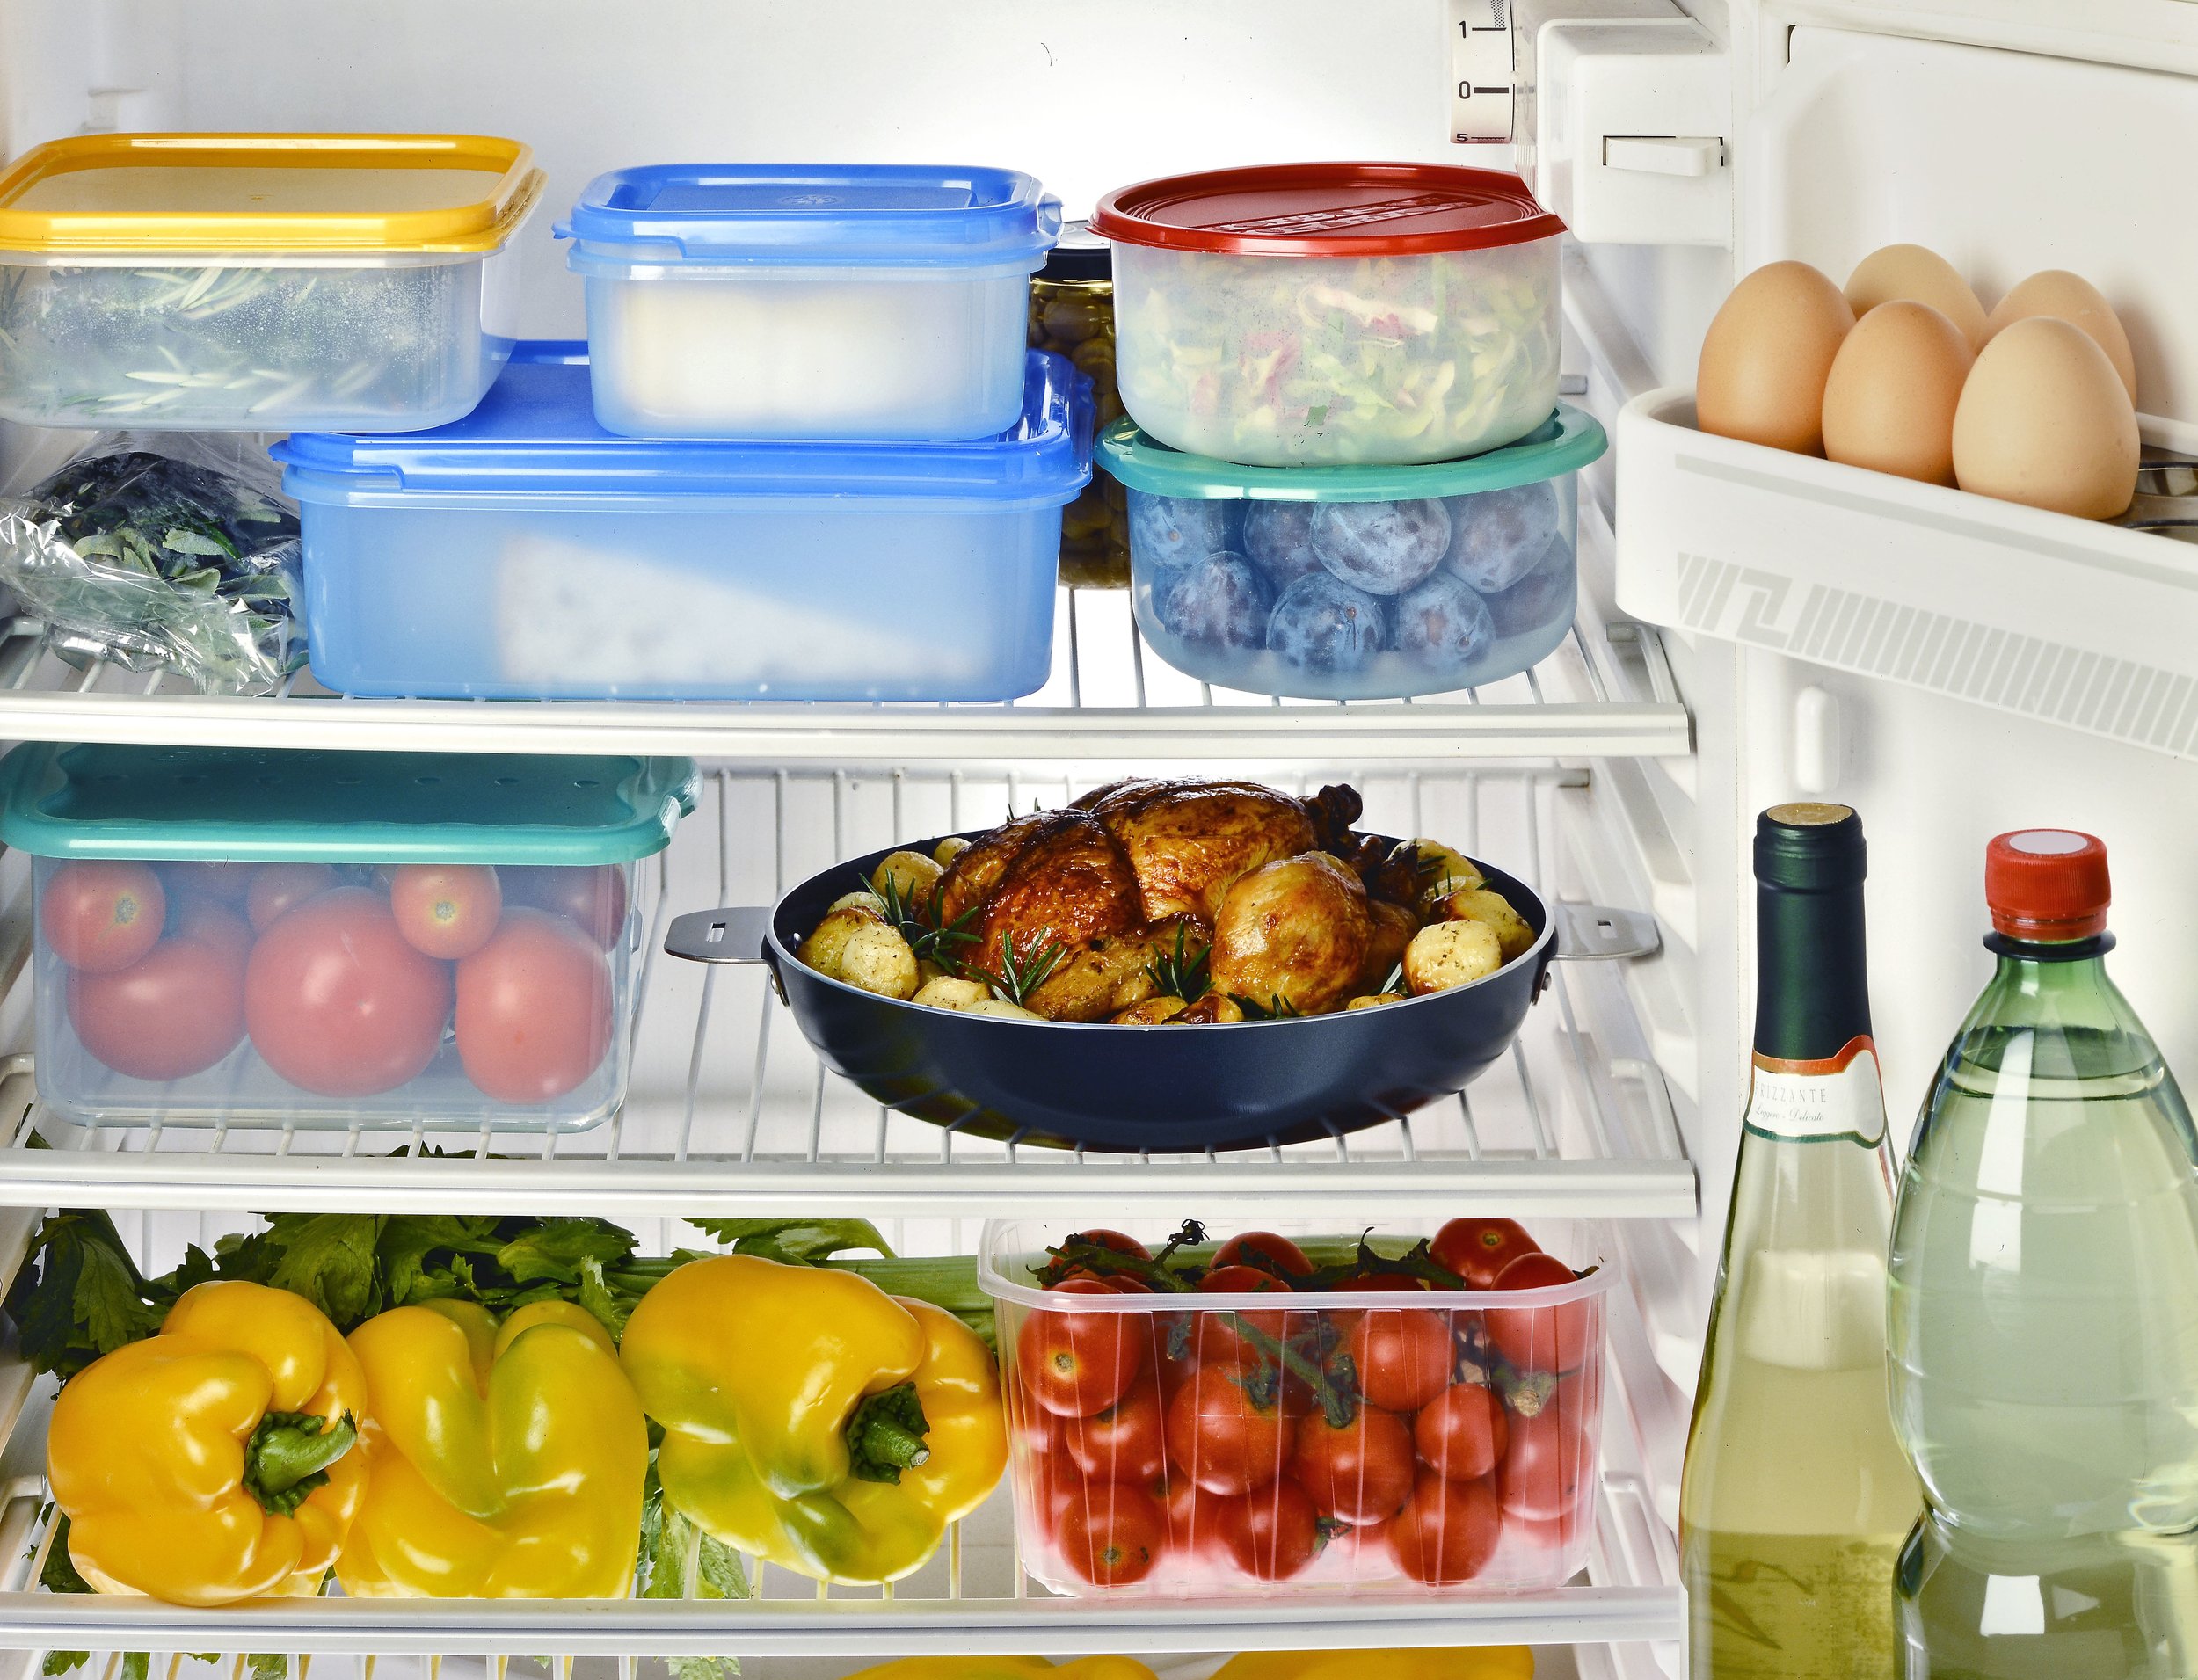 В холодильнике есть мясо. Проддуктыв холодильнике. Холодильник с продуктами. Хранение продуктов. Холодильник с едой.